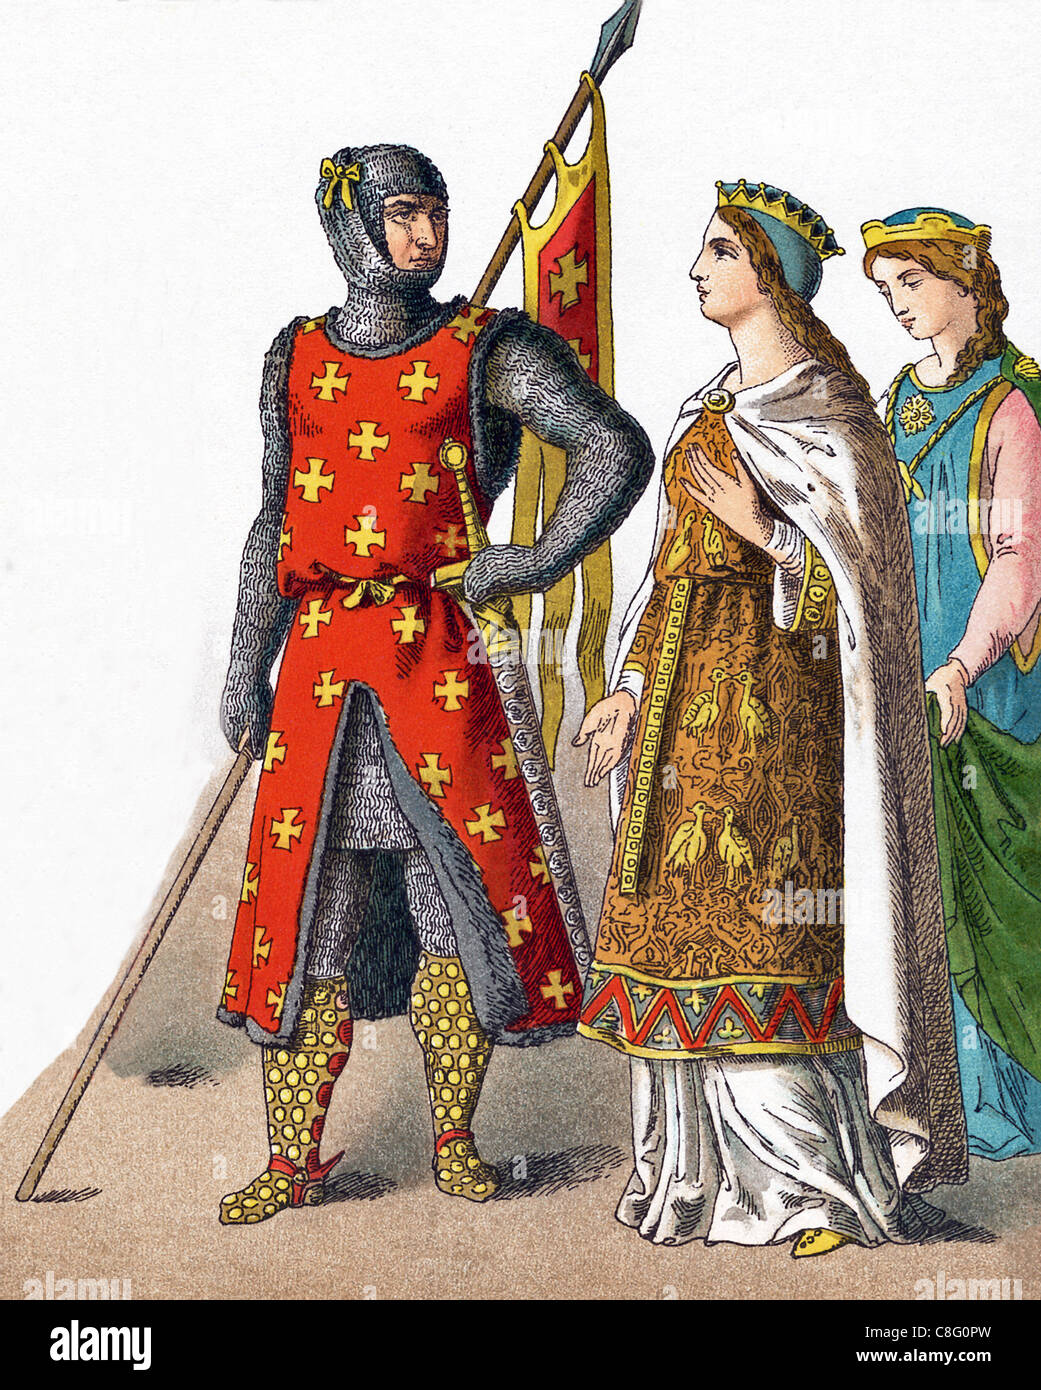 Le figure mostrate qui rappresentano i tedeschi circa A.D. 1100. Essi sono da sinistra a destra: un guerriero e due principesse. Foto Stock